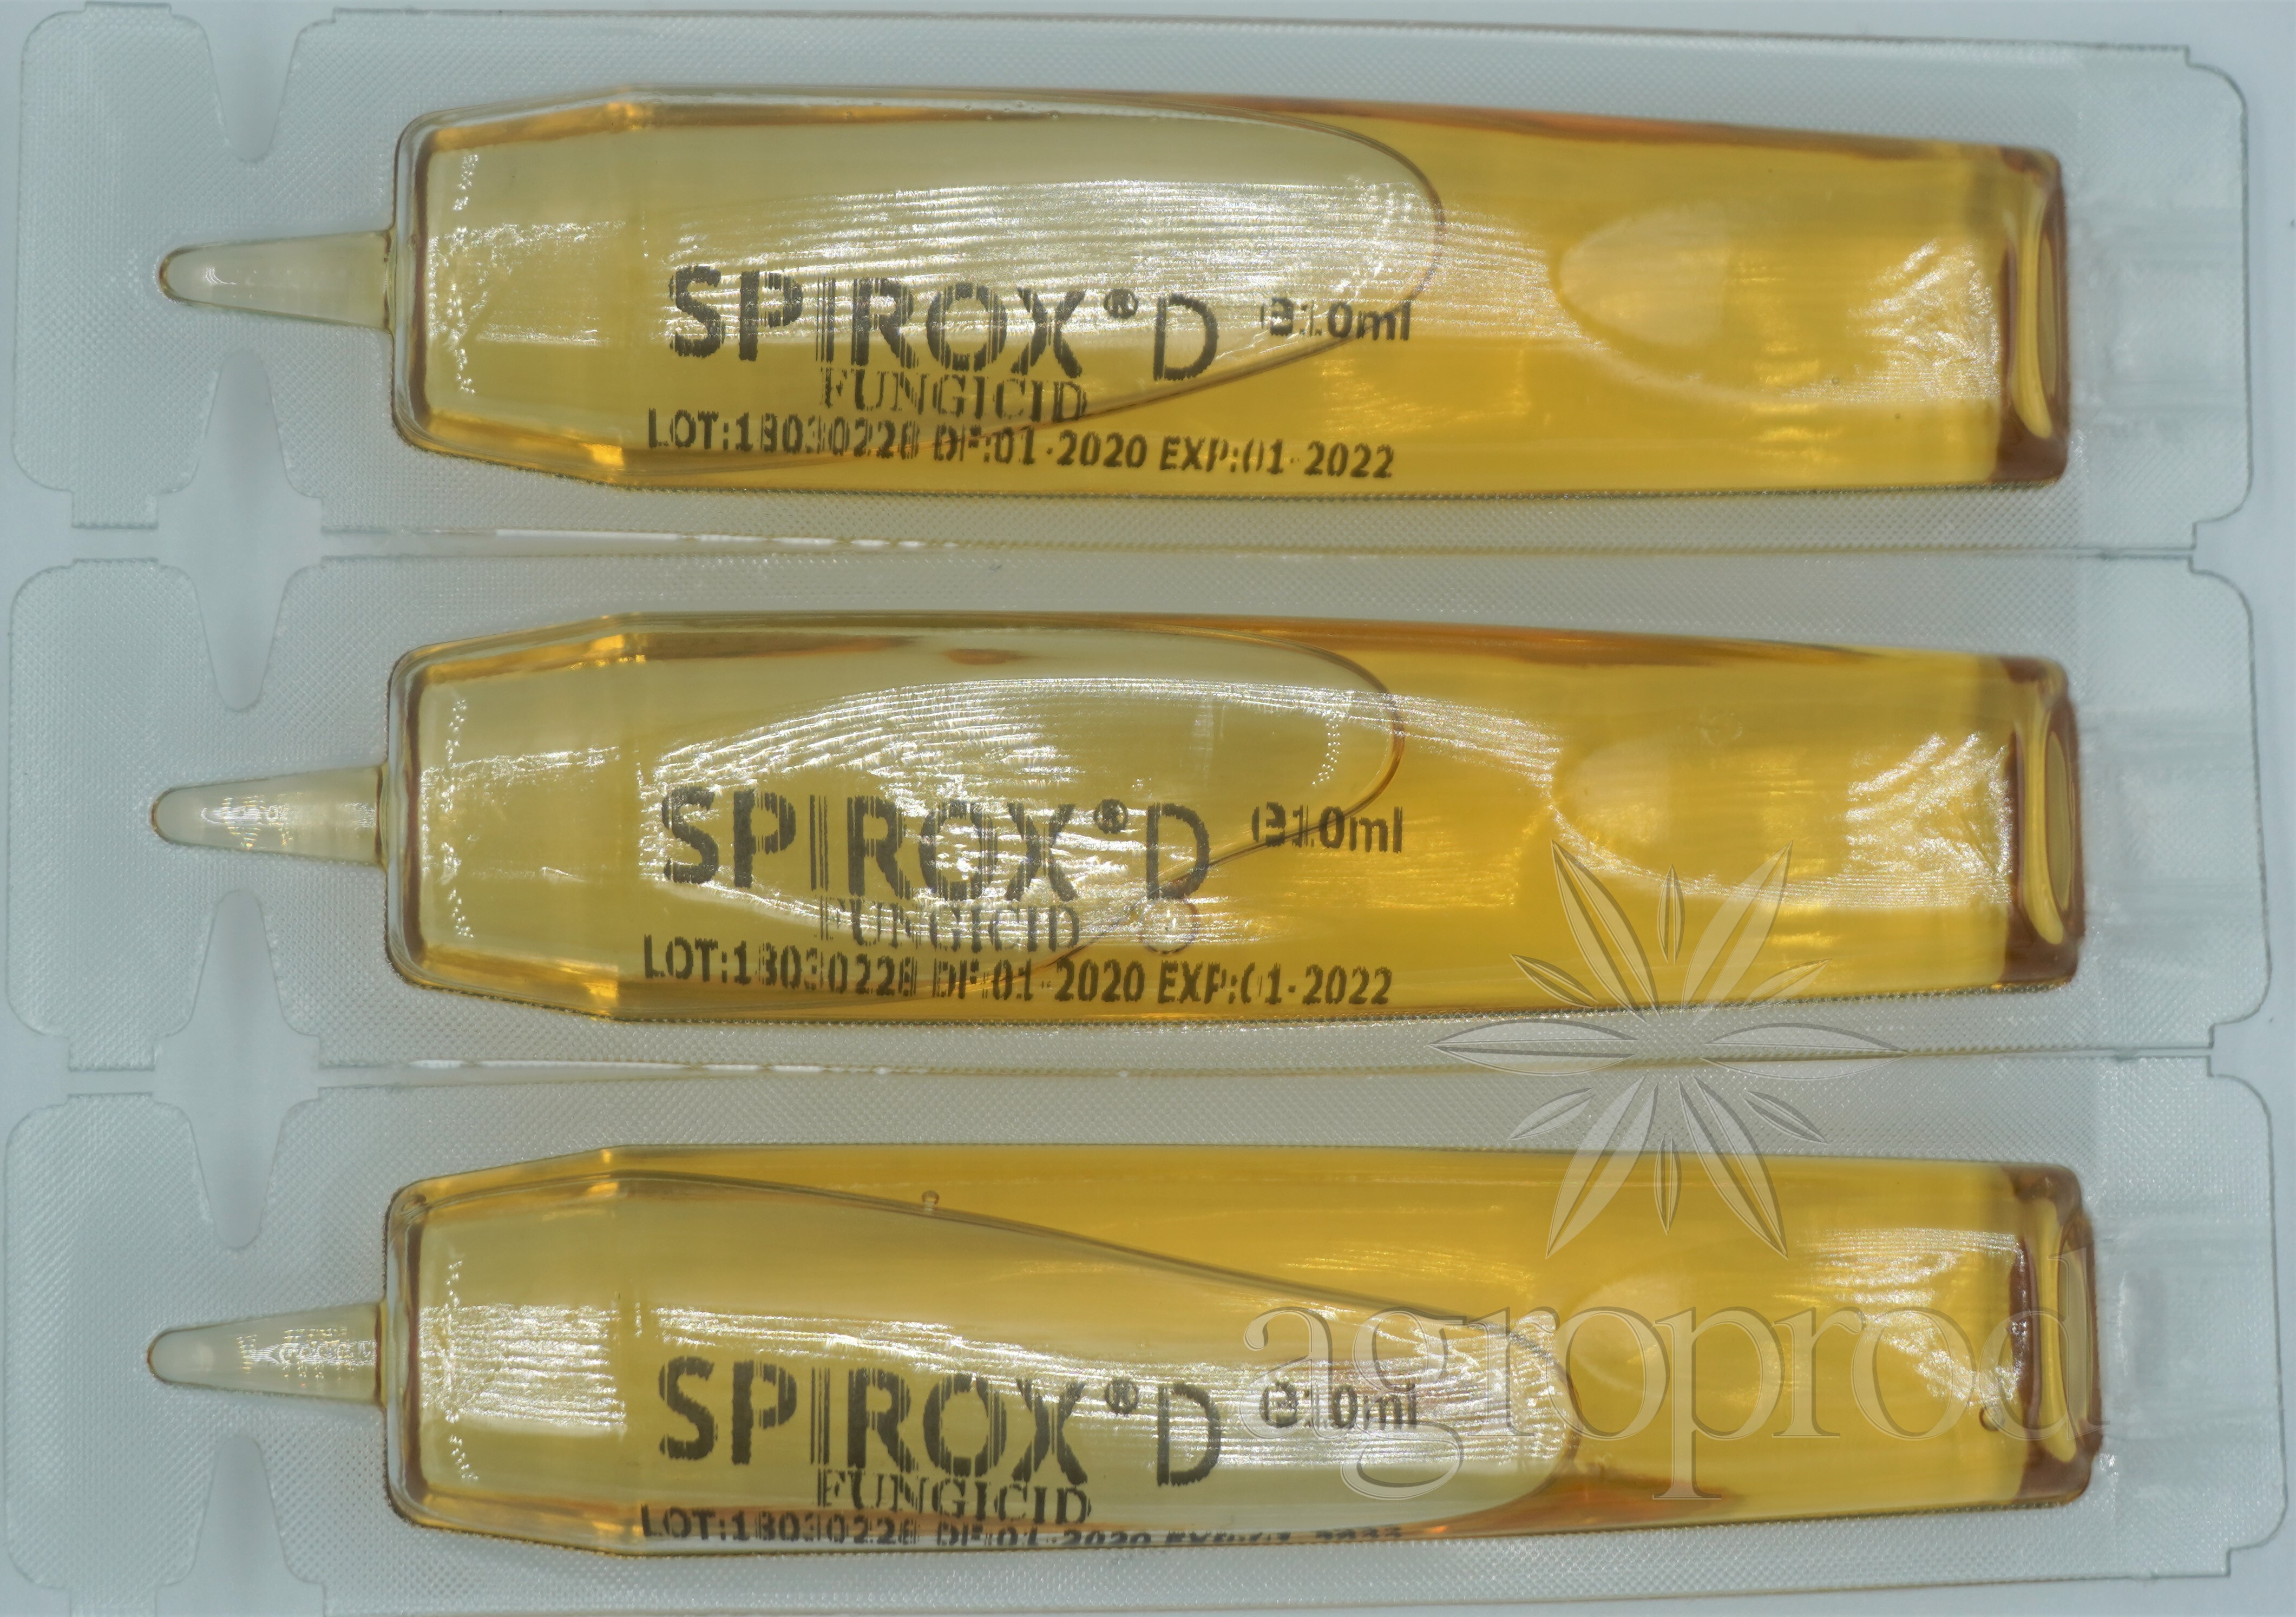 Spirox D 10 ml